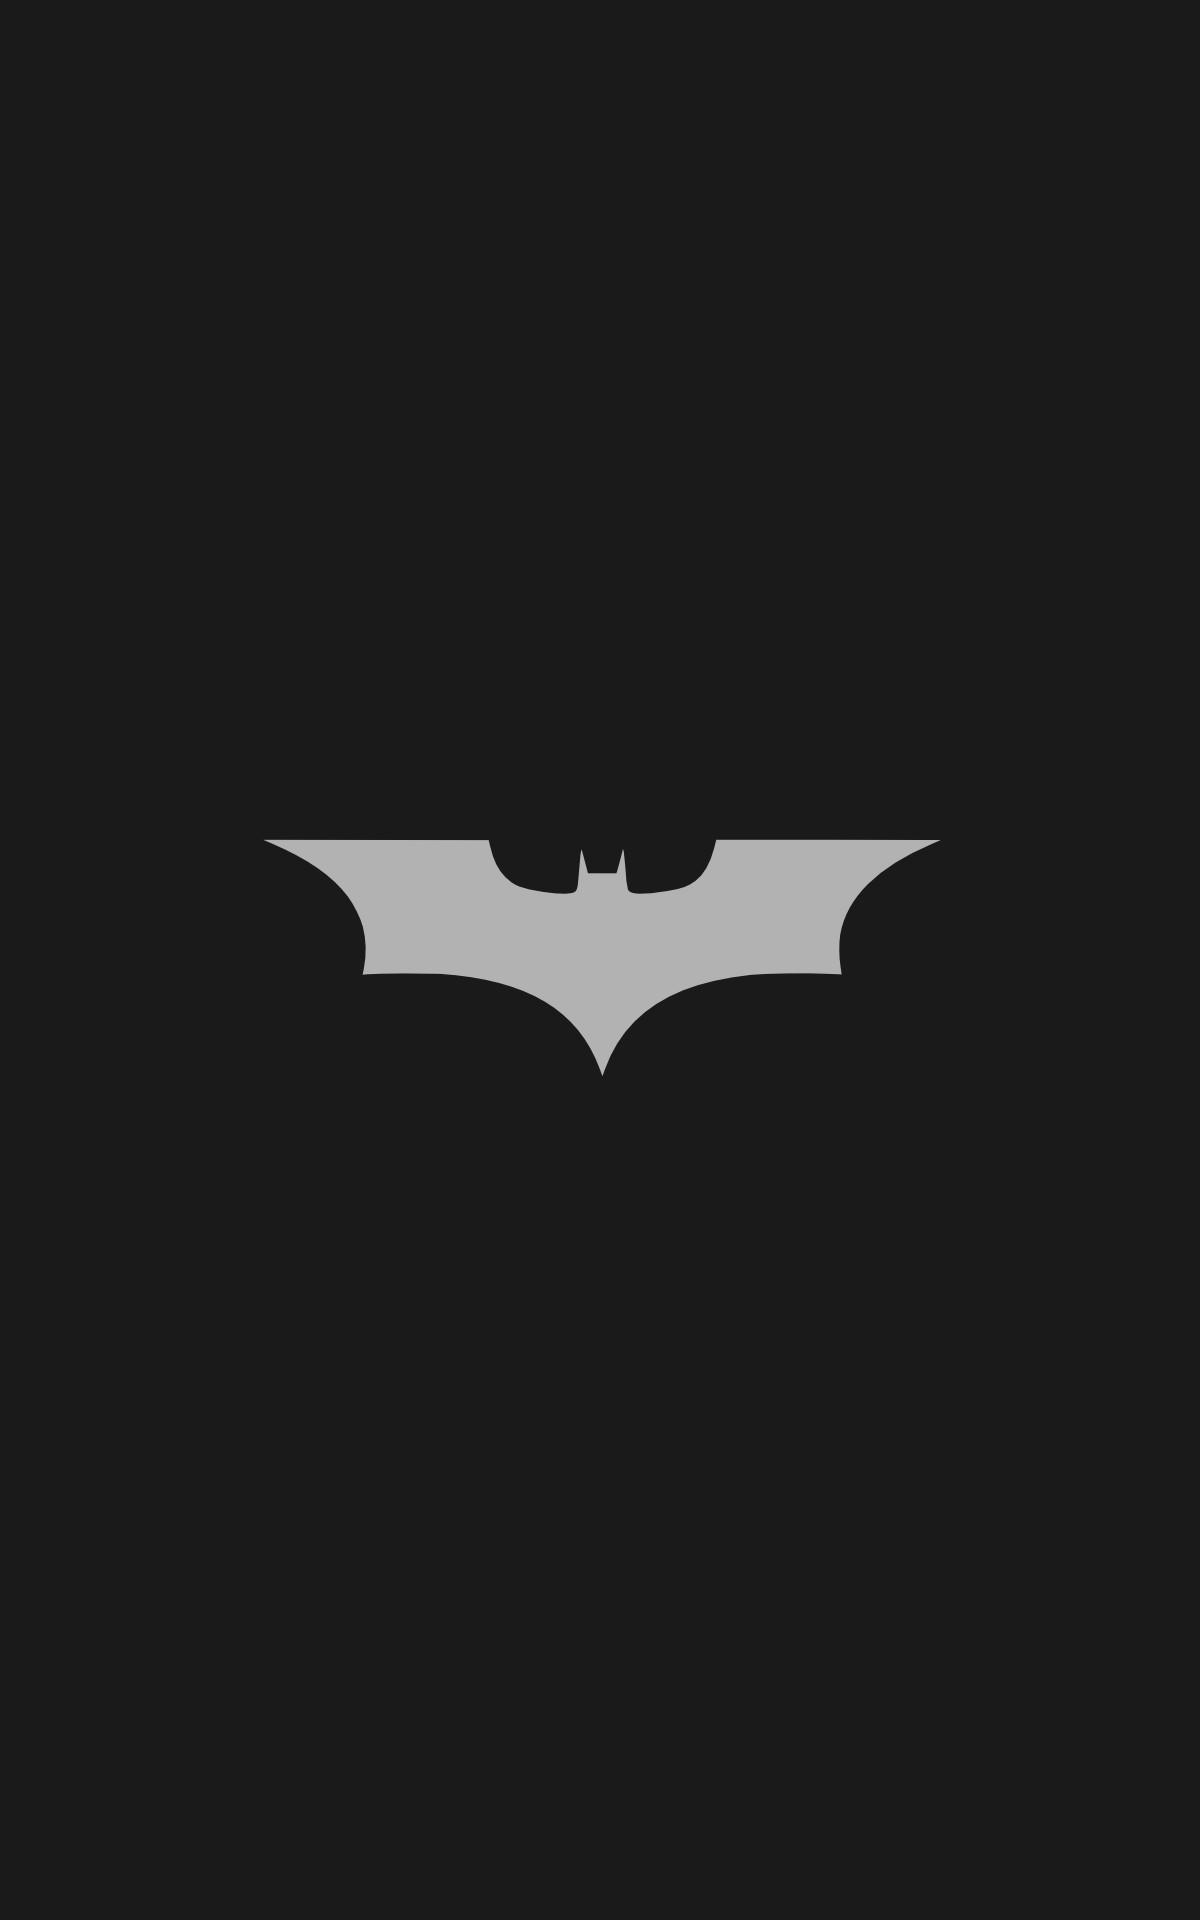 1200x1920 General  Batman logo Batman minimalism portrait display